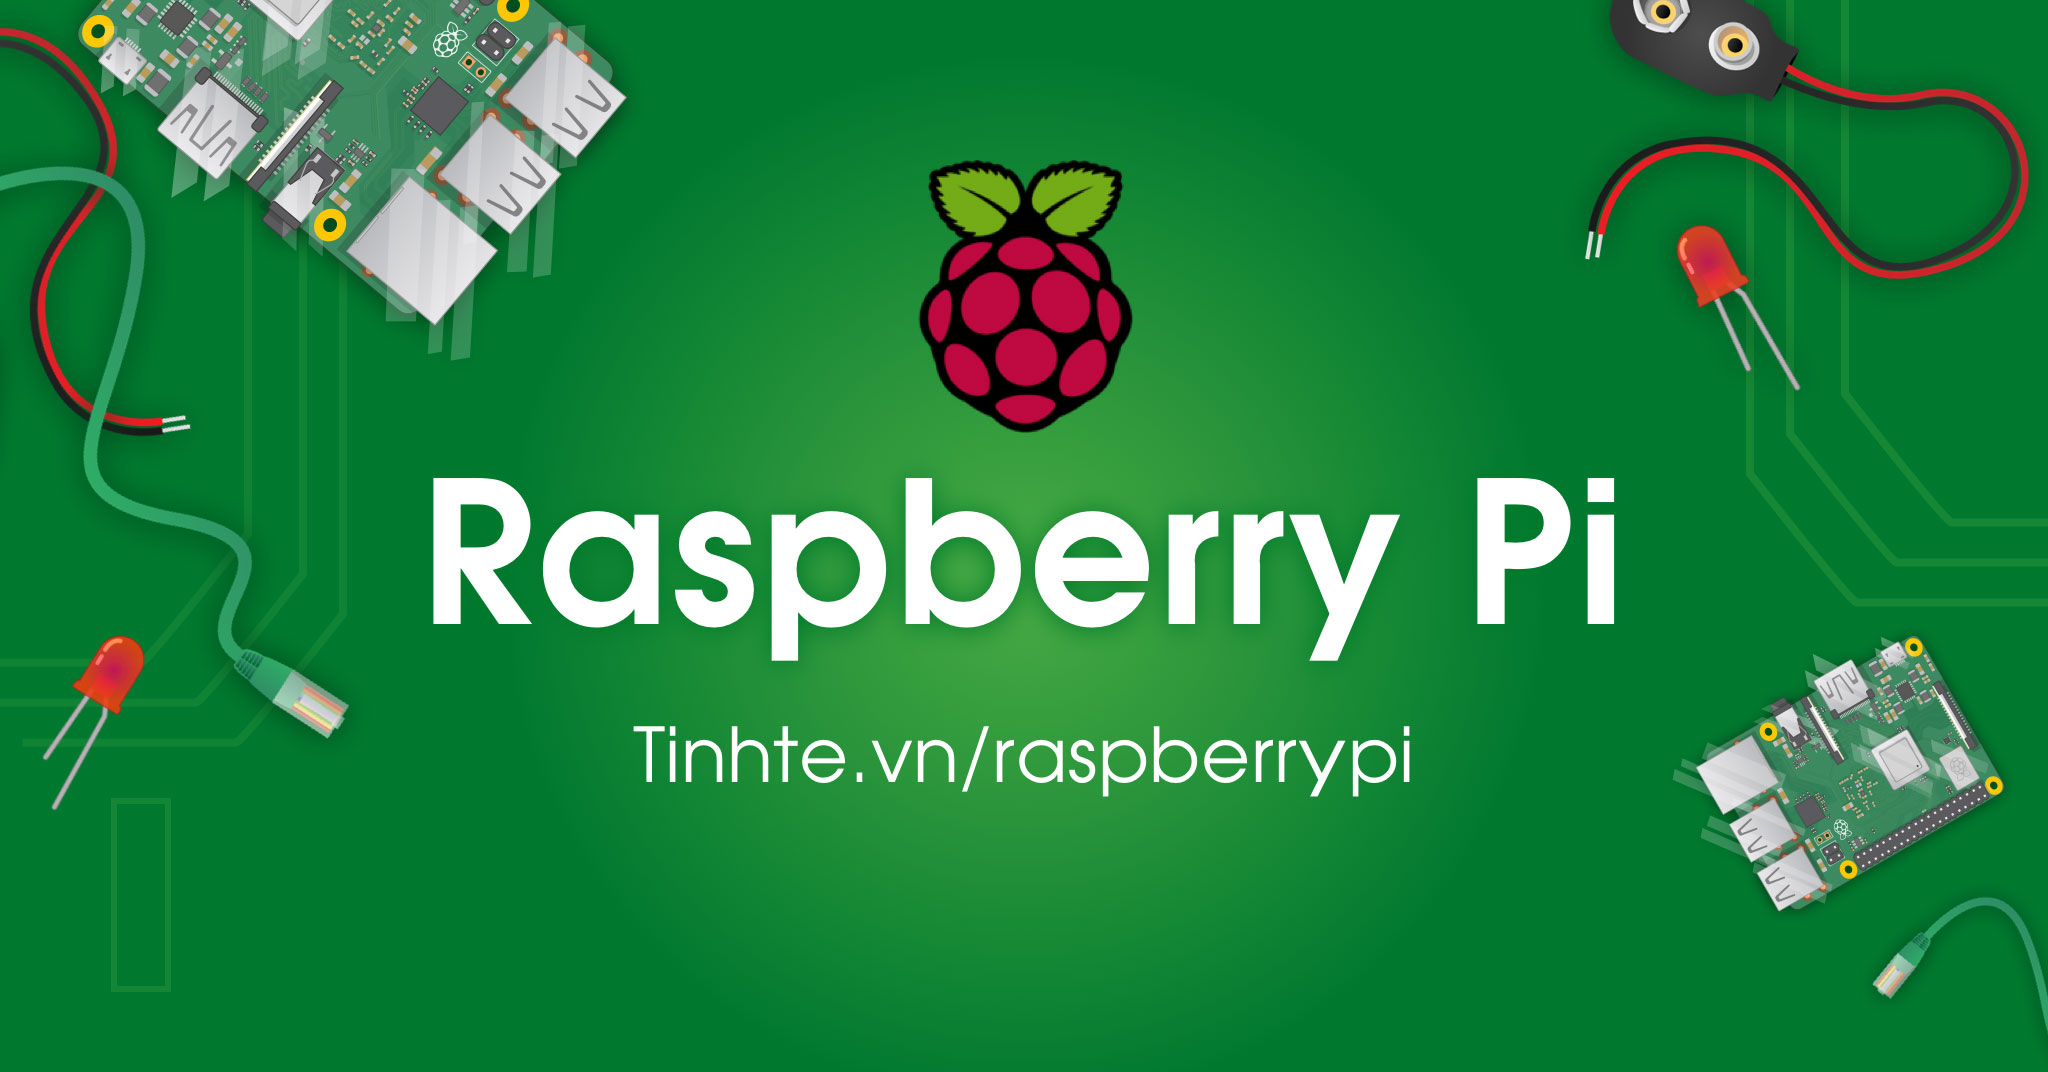 Tinhte.vn/rpi: Rủ anh em cùng chơi Raspberry Pi với chi phí thấp ...